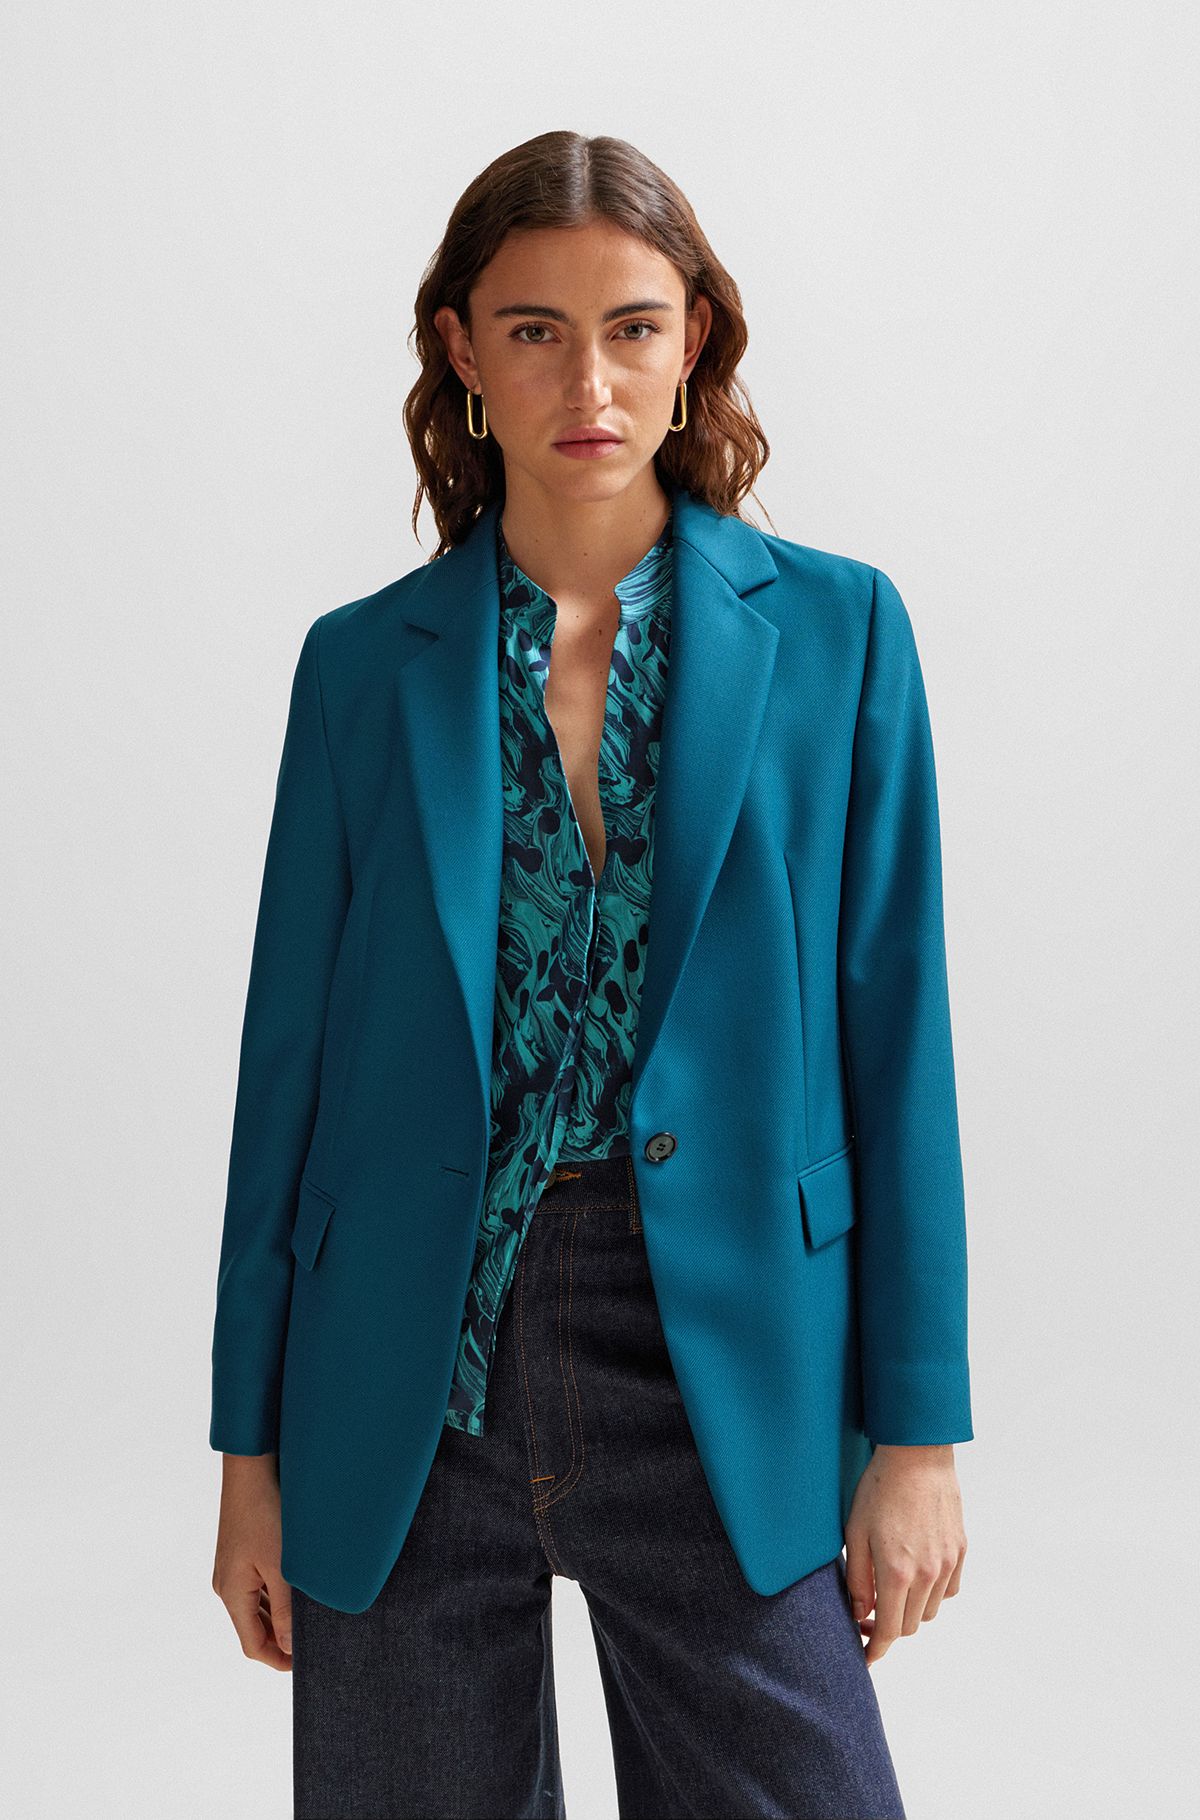 Tailored Blue Coat Women's Suits Sets Slim Fit Shawl Lapel Blazer